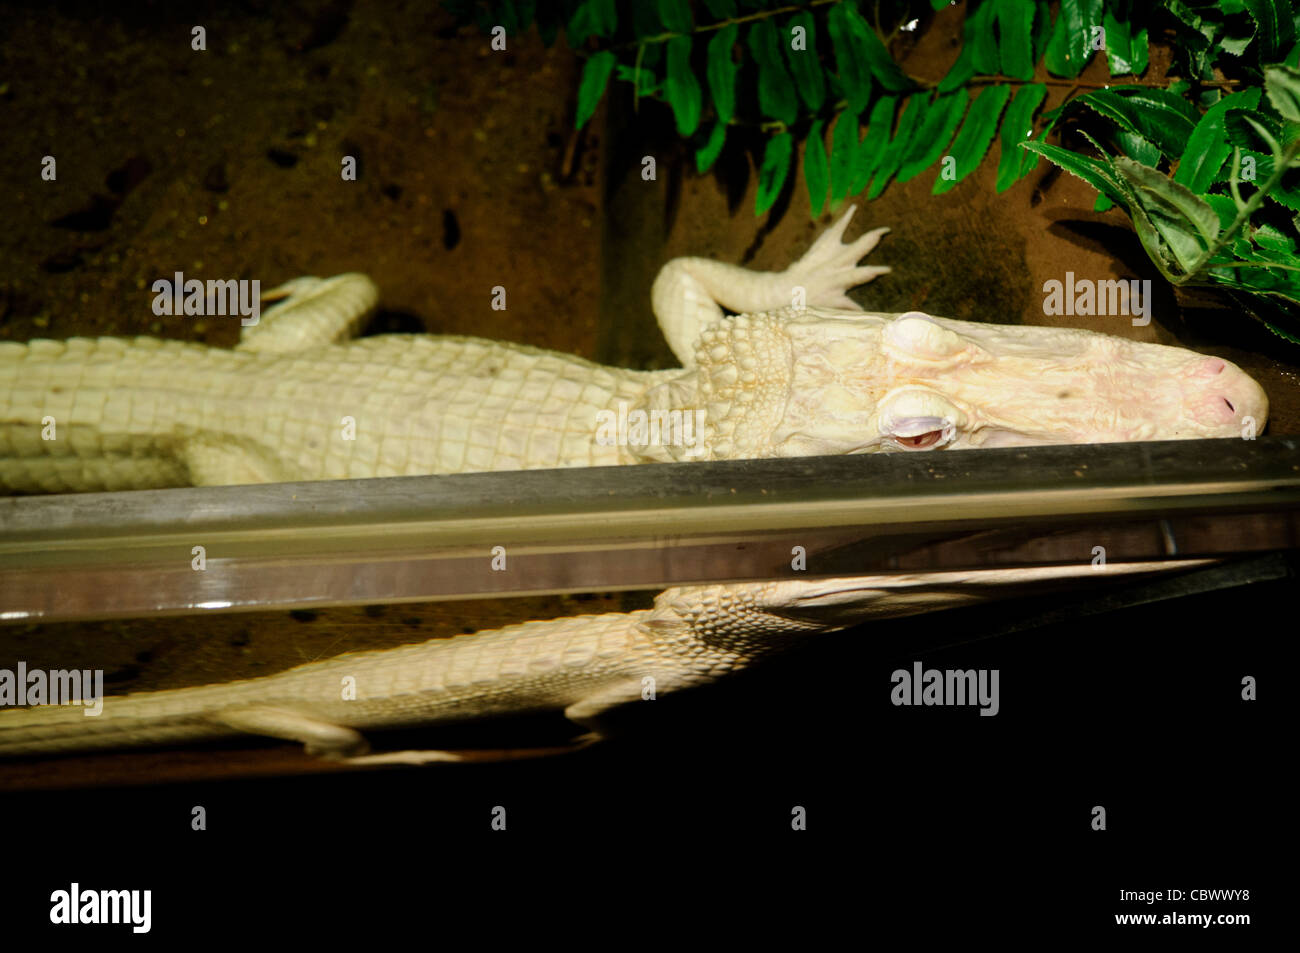 WASHINGTON DC, USA - un alligator albinos rare nommé Gallery sur l'affichage à l'Aquarium National au centre-ville de Washington DC à la fin de 2011 comme faisant partie des secrets du marais exposition spéciale. L'Aquarium National est dans le sous-sol de l'immeuble du ministère du Commerce, où il a été installé depuis 1932. Bien plus petit et moins connu que ses installations affiliées à Baltimore, Washington's Aquarium national se compose d'une série de réservoirs l'illustre différents types d'environnements marins, avec un accent particulier sur les nombreux sanctuaires marins américains en territoire marin. NB : L'aquarium fermé en 2 Banque D'Images